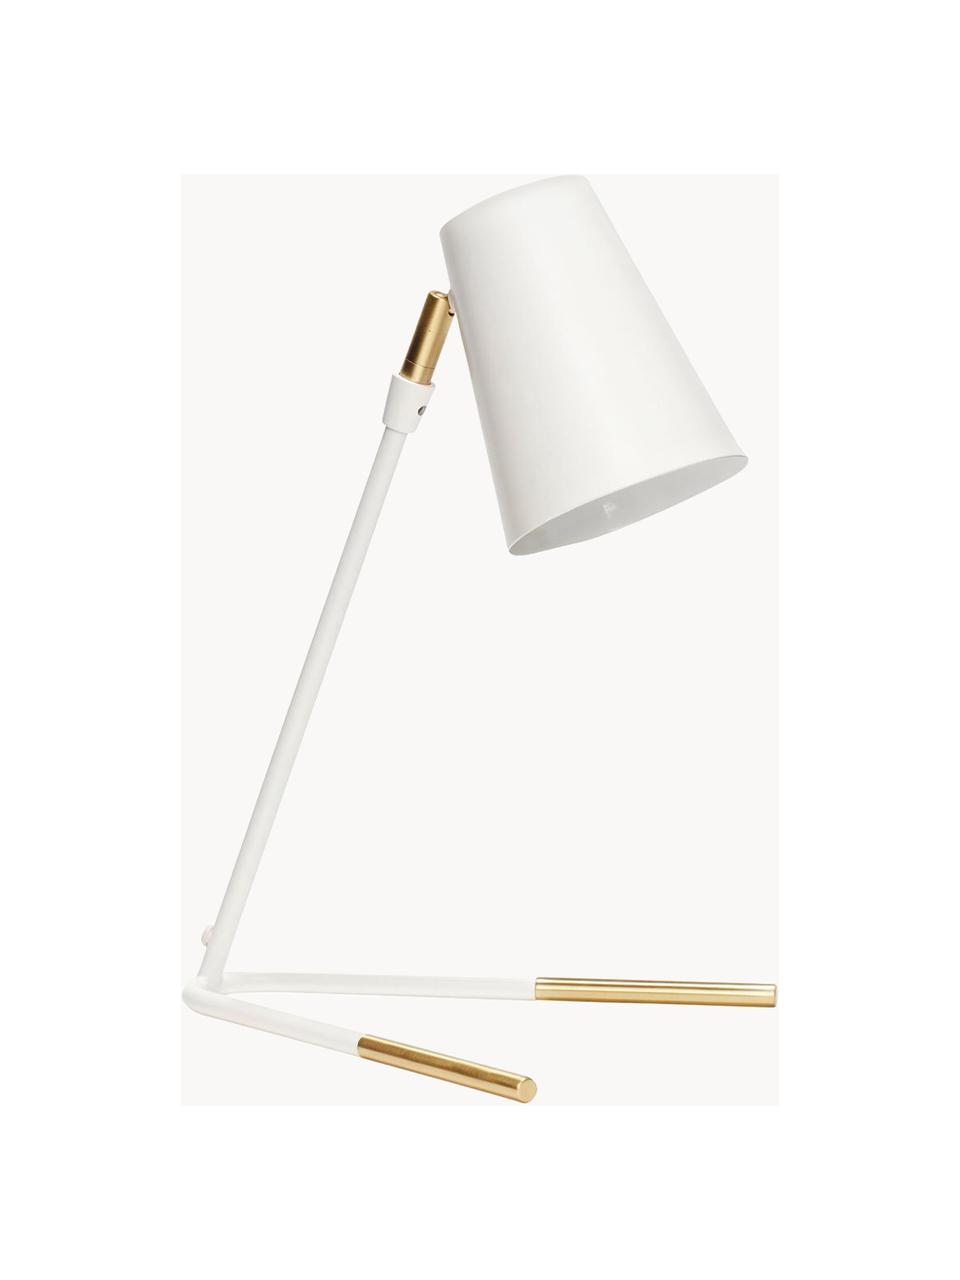 Lampa stołowa Viktorija, Metal malowany proszkowo, mosiądz, Biały, złoty, 25 x 46 cm